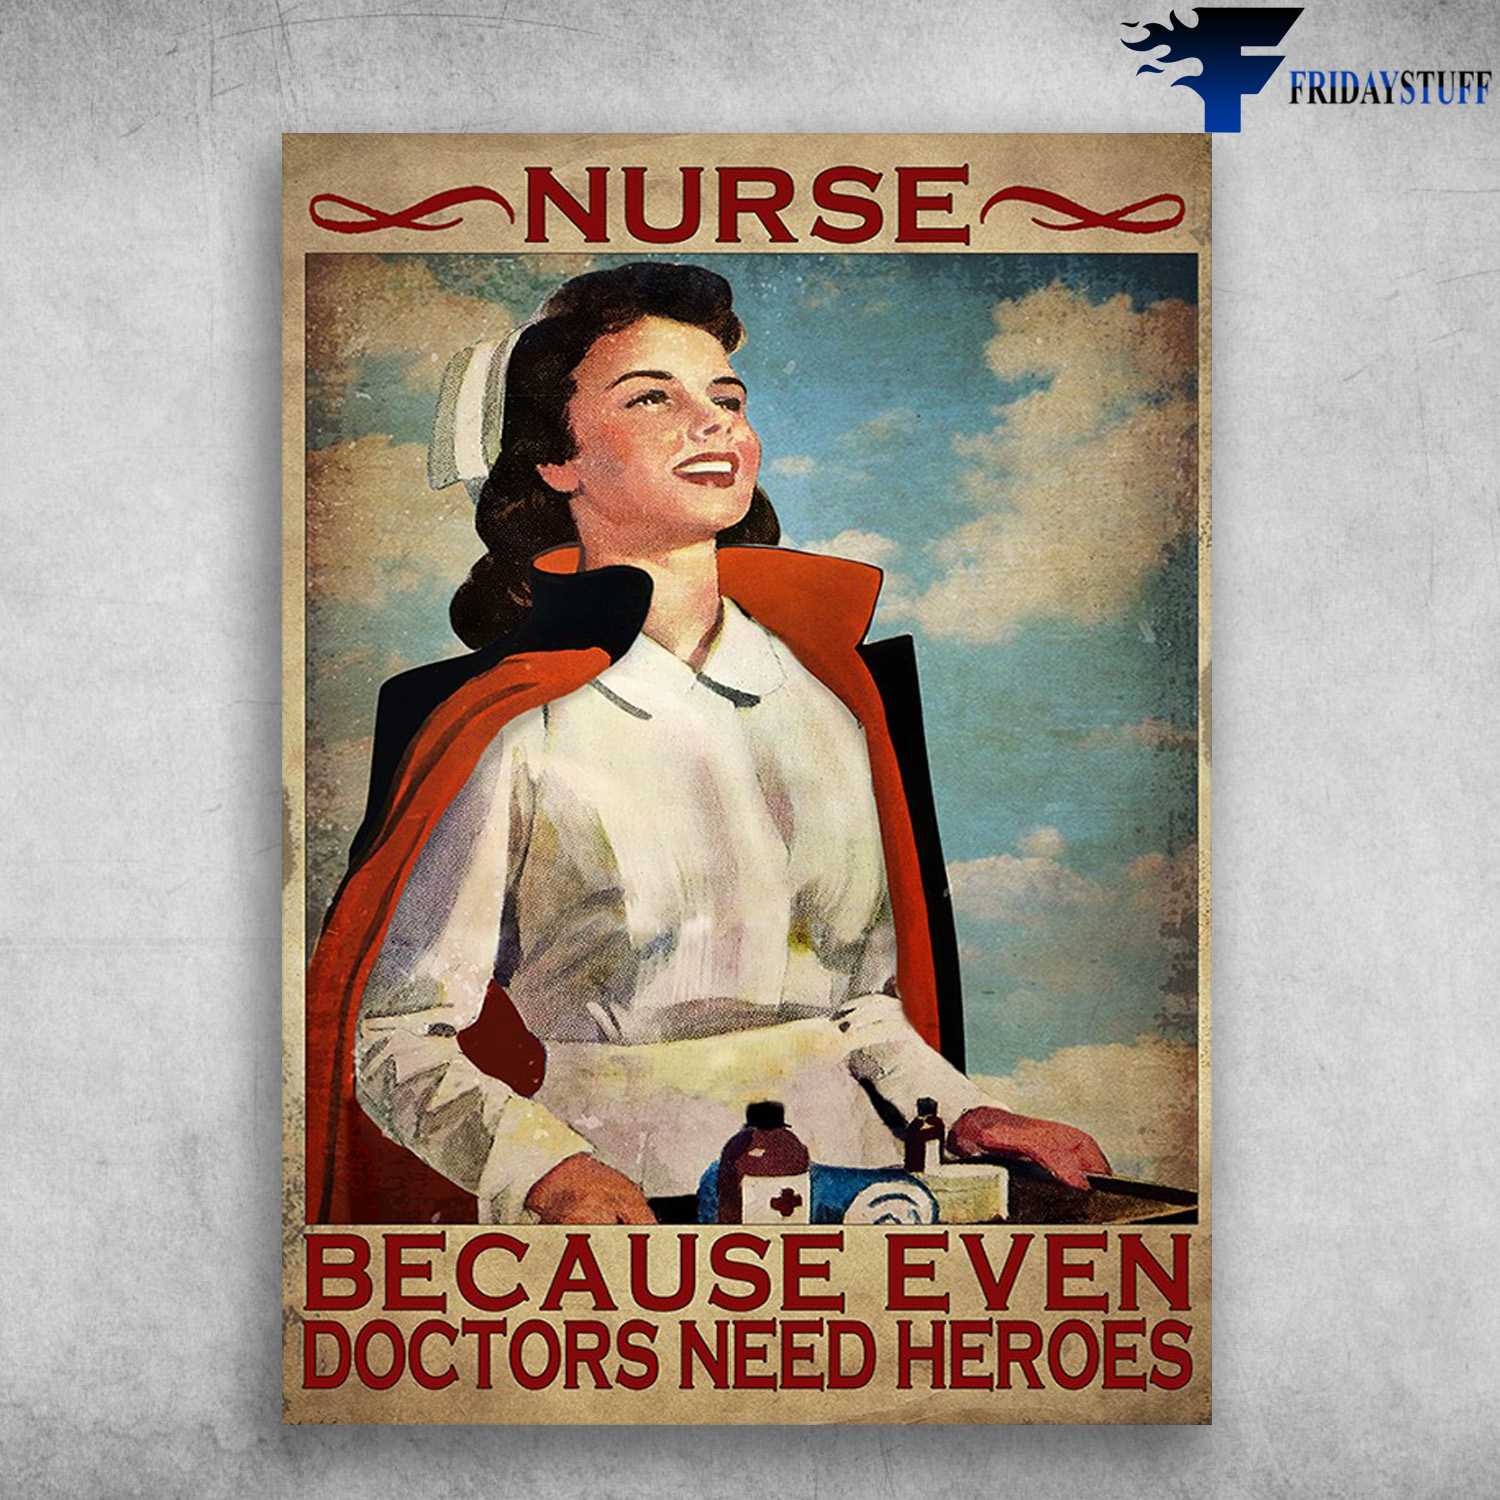 Nurse Heroes - Nurse Because Even Doctors Need Heroes